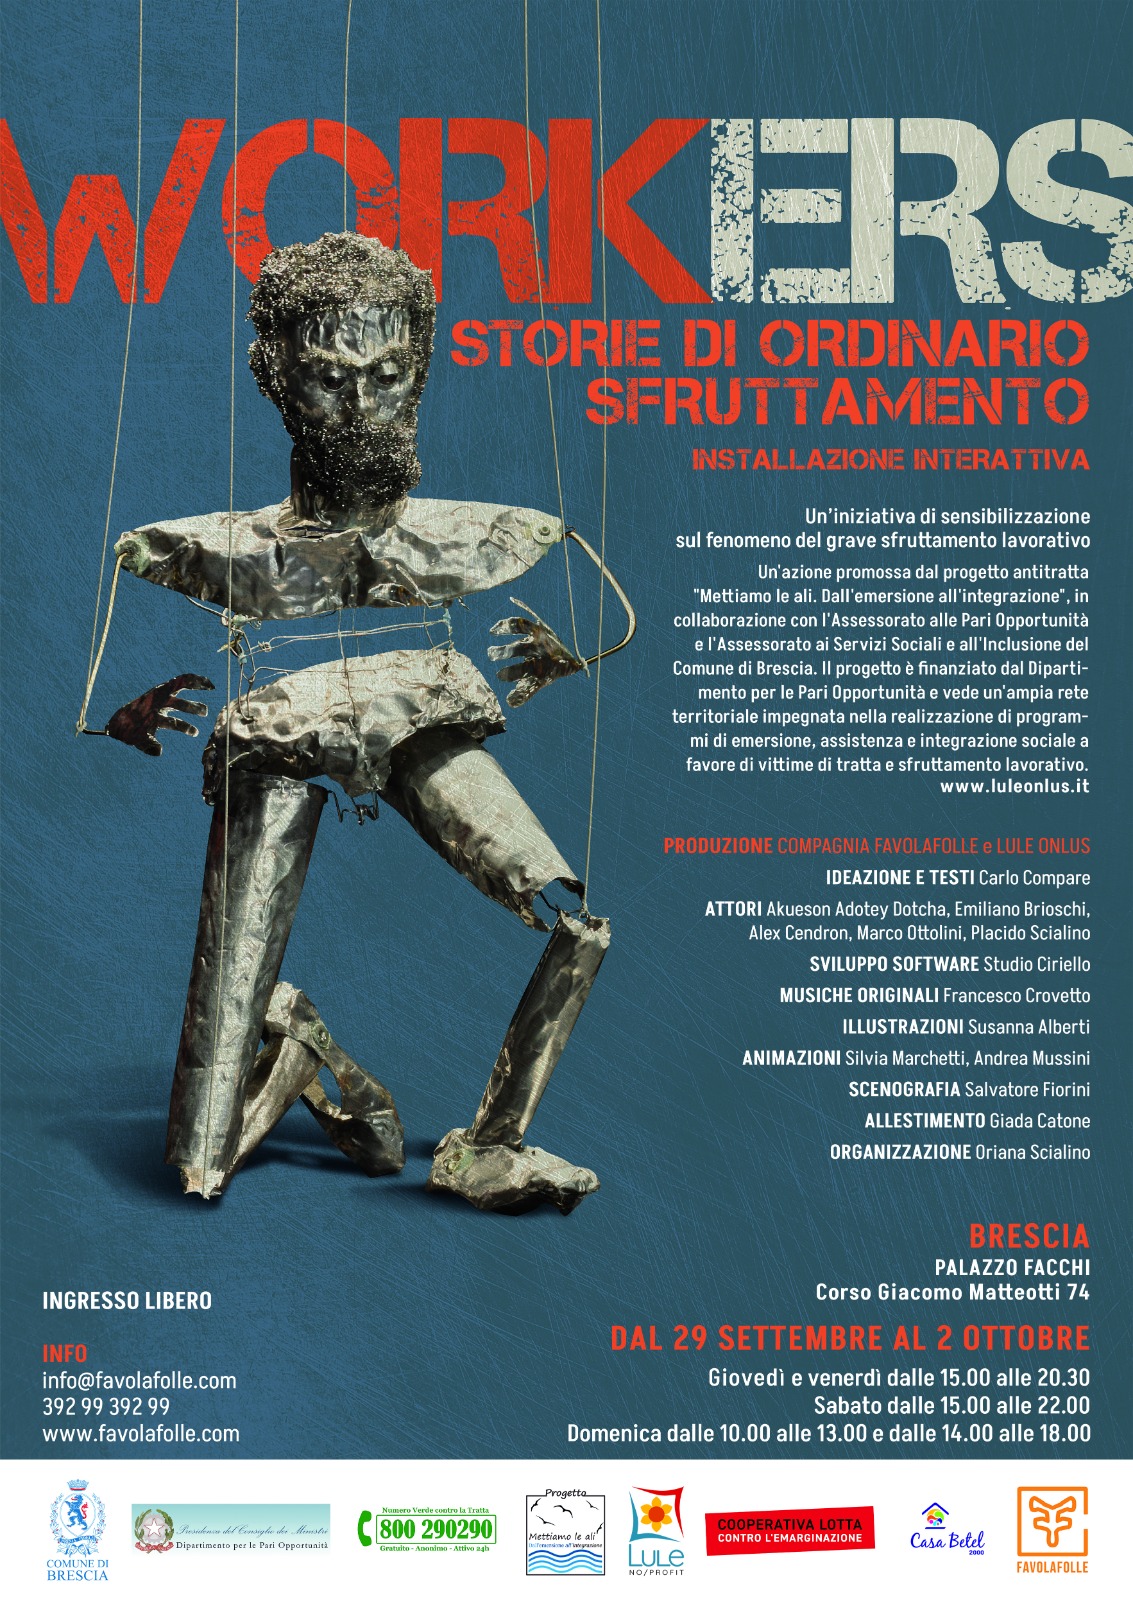 Workers, storie di ordinario sfruttamento. A Brescia fino al 2 ottobre